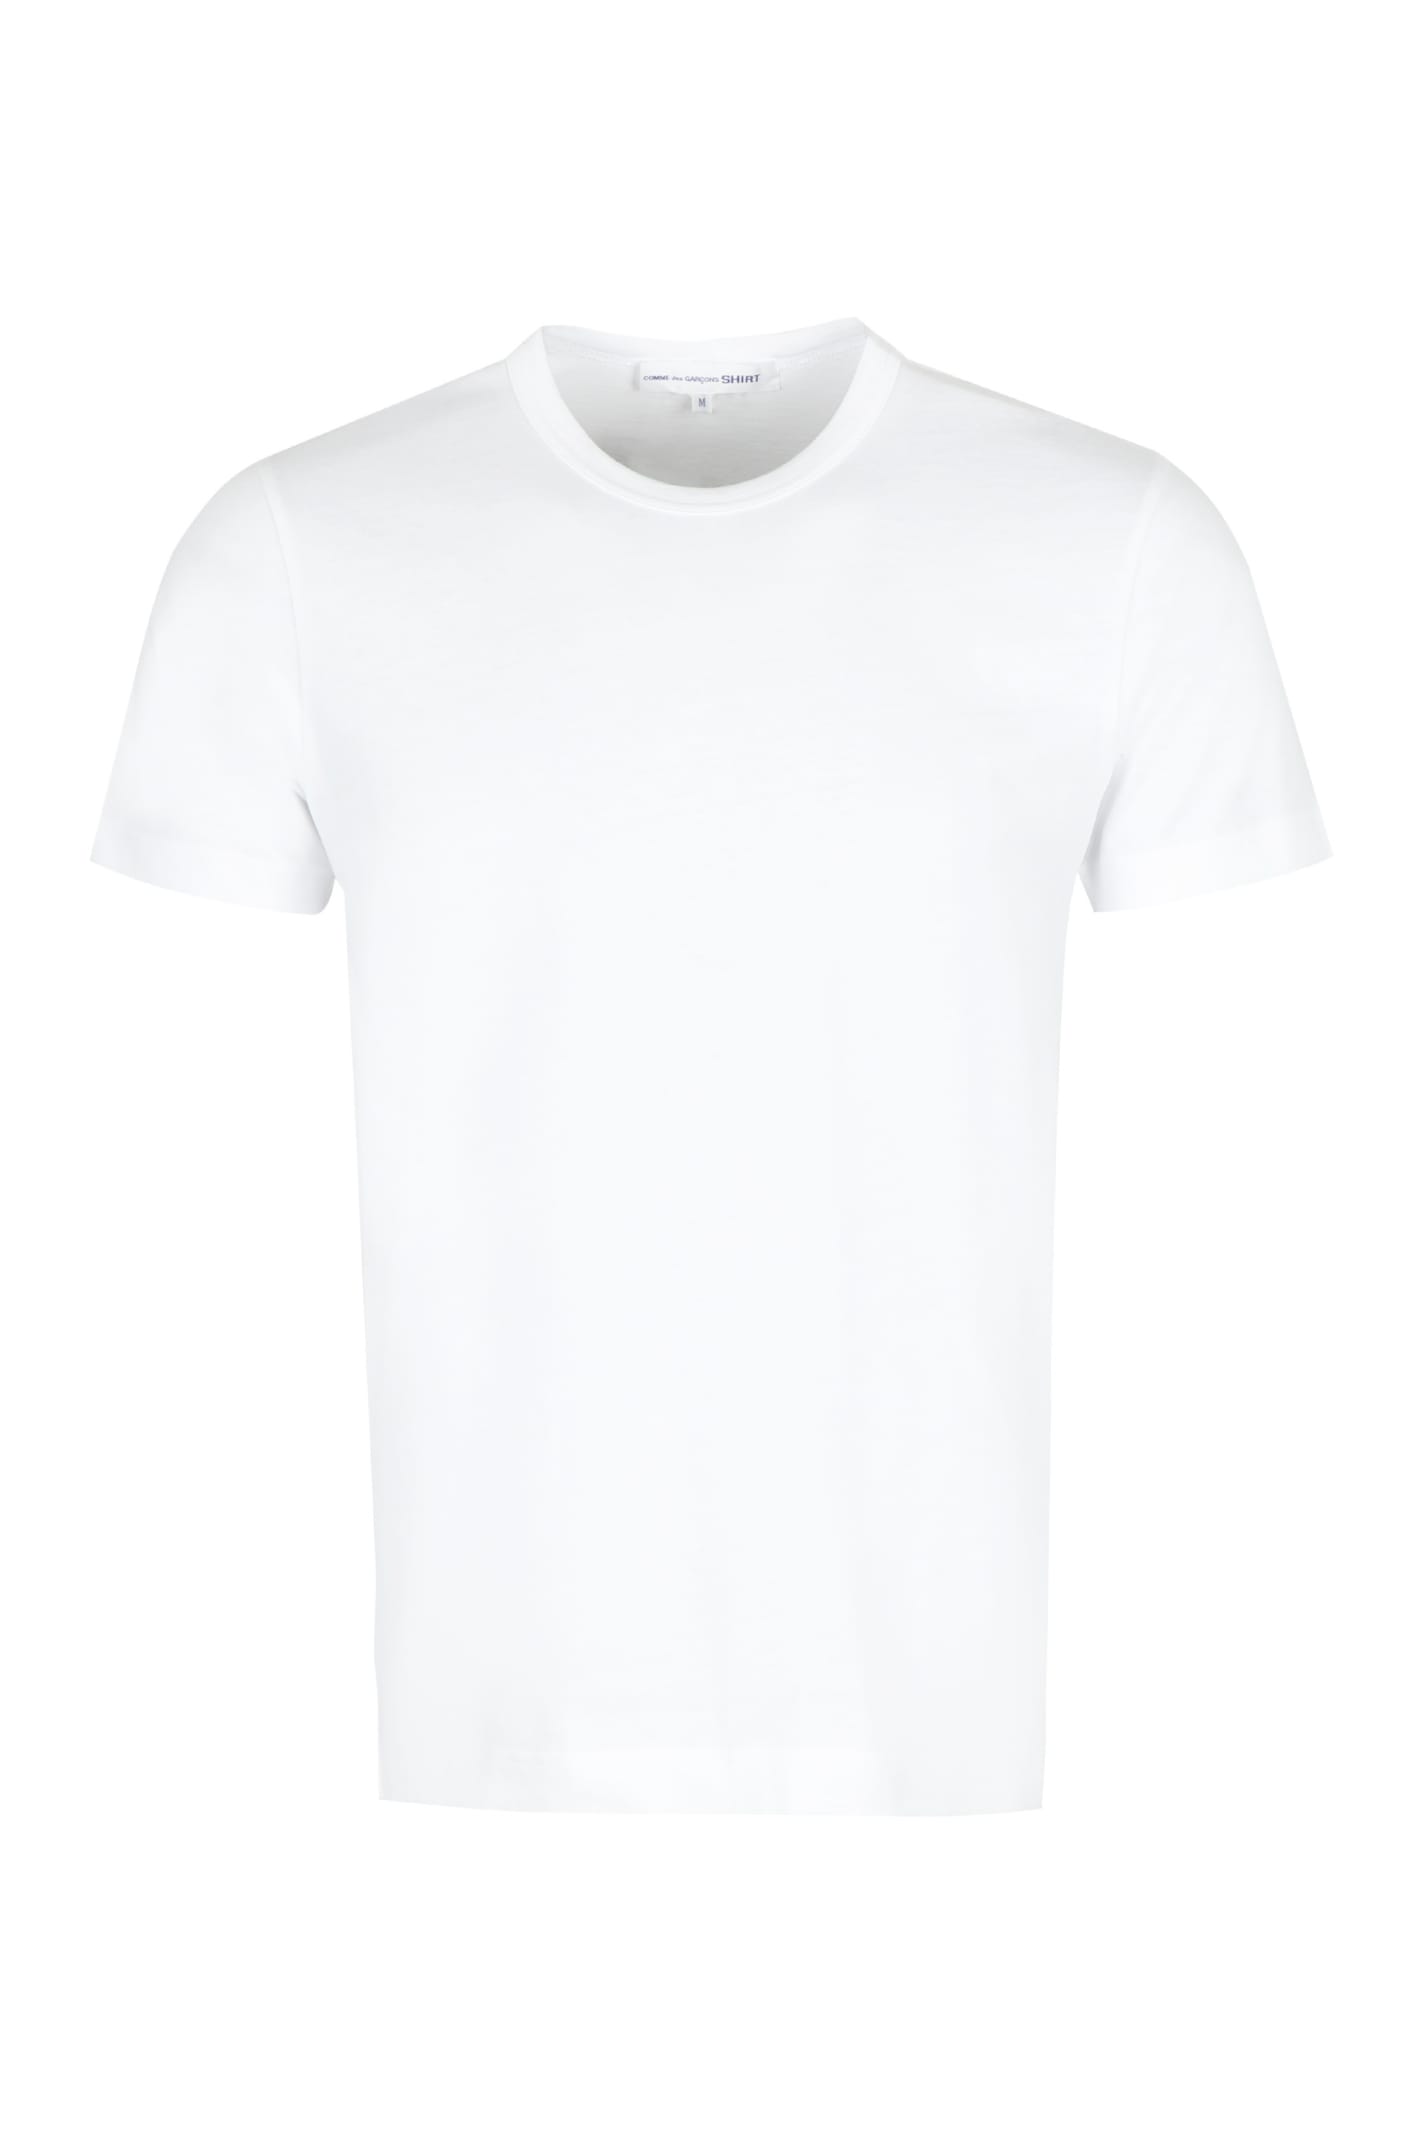 Comme des Garçons Shirt Cotton Crew-neck T-shirt